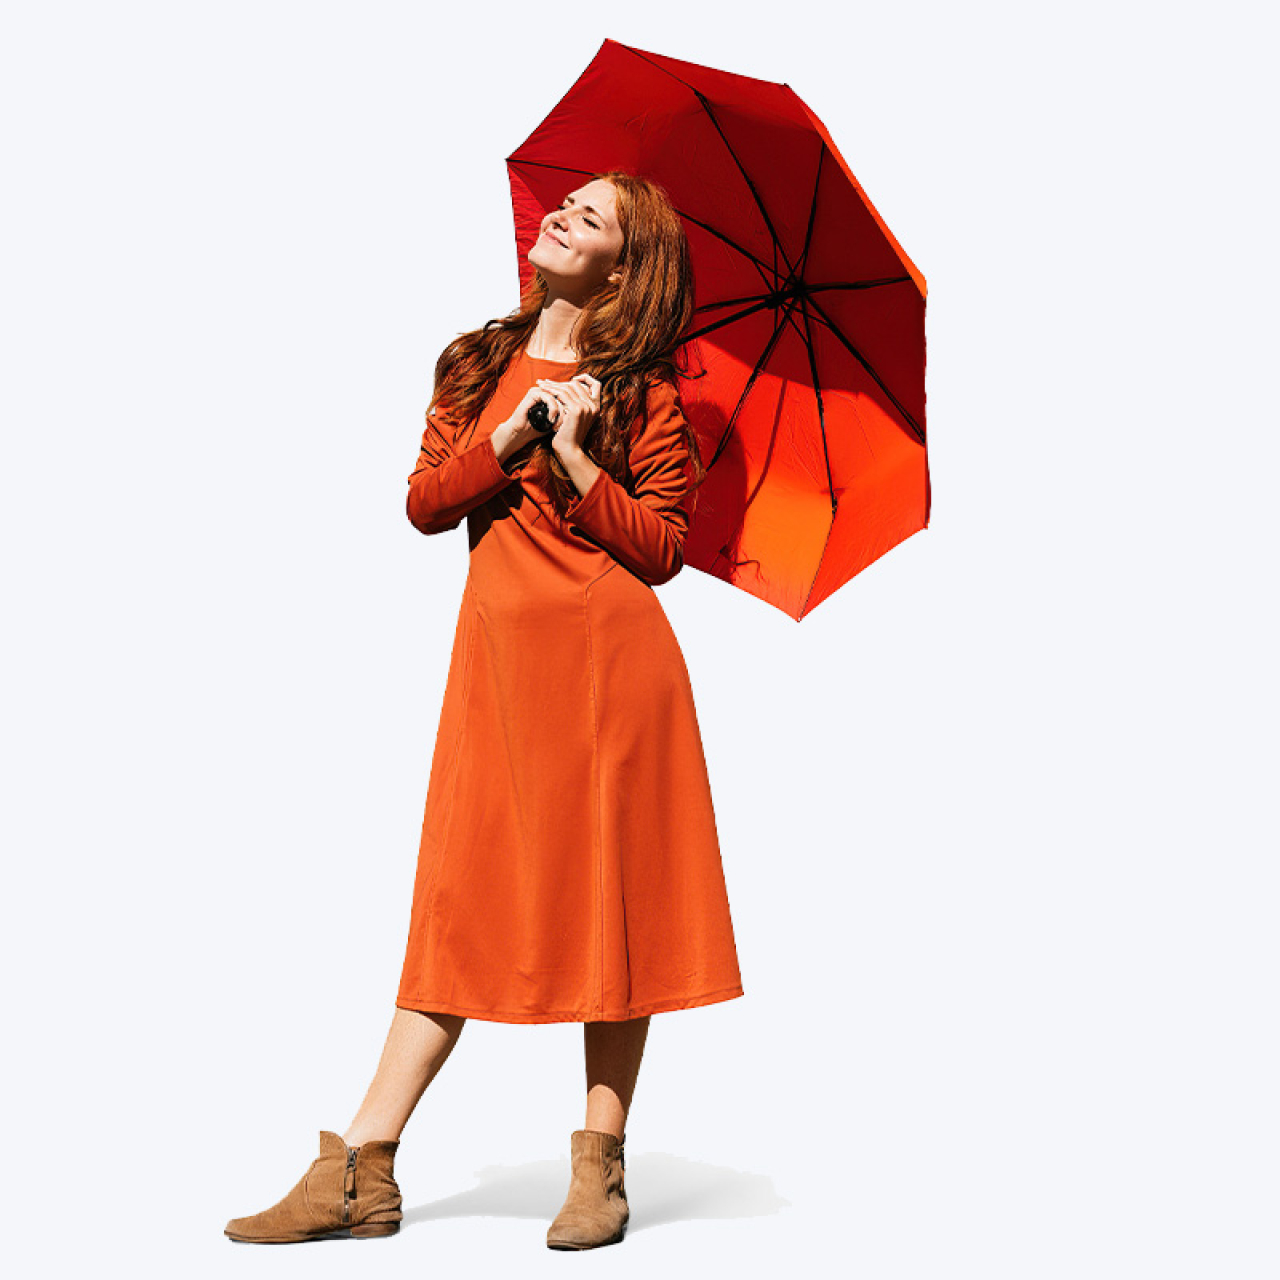 Frau in orange mit Regenschirm